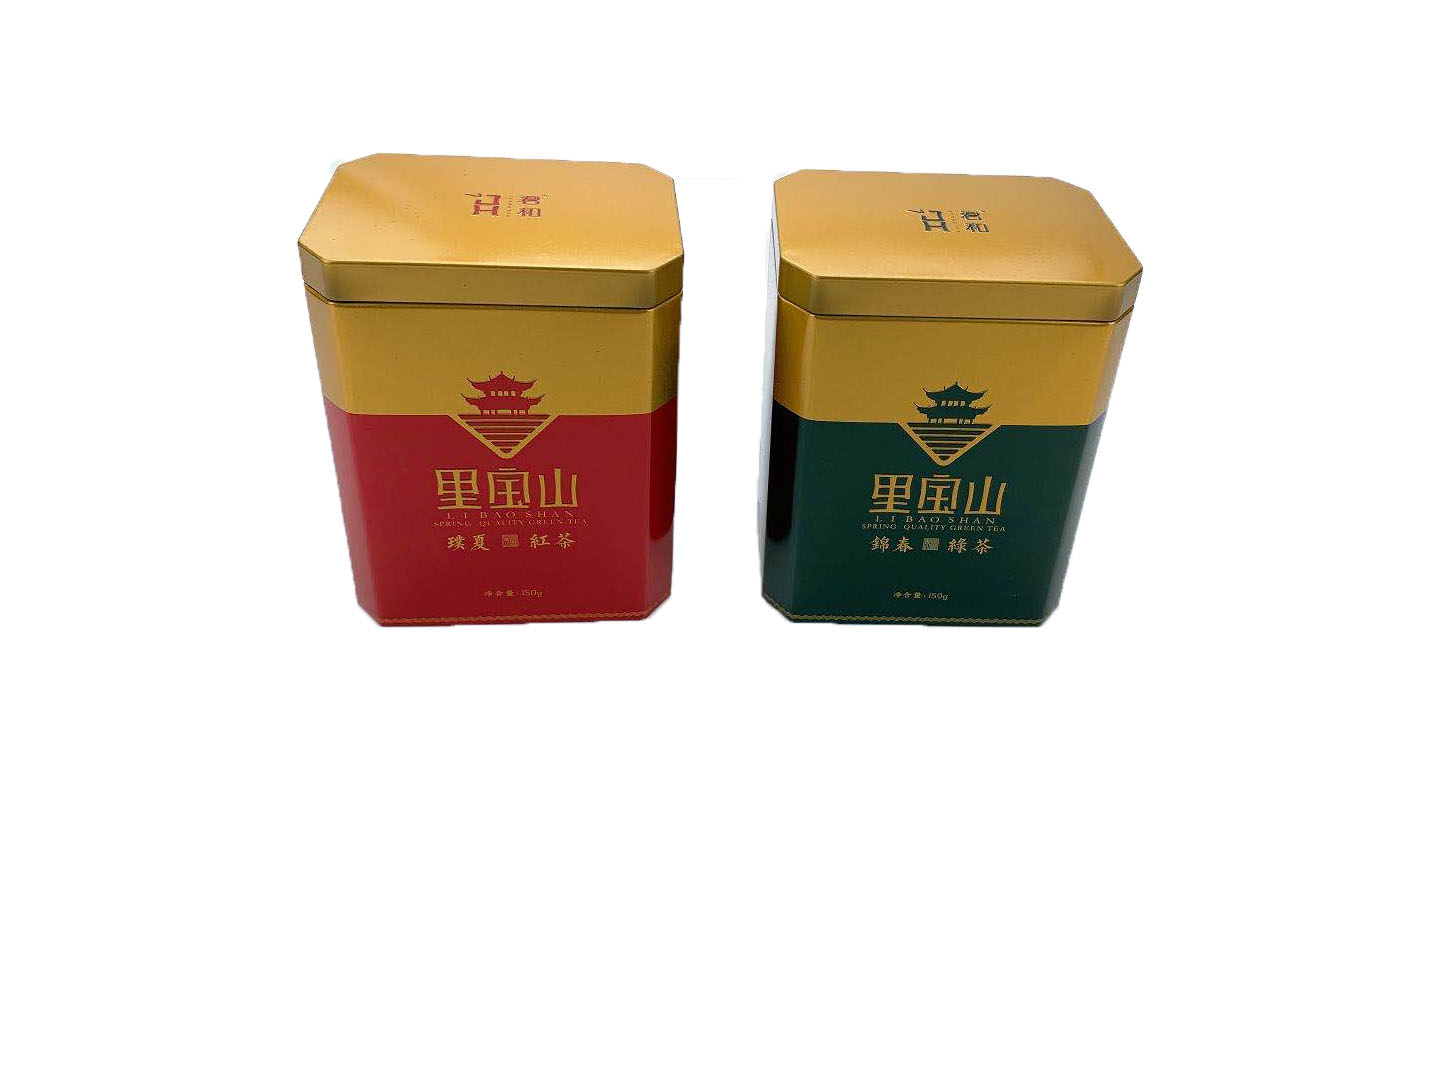 里宝山红茶八角罐 里宝山红茶茶叶罐生产厂家